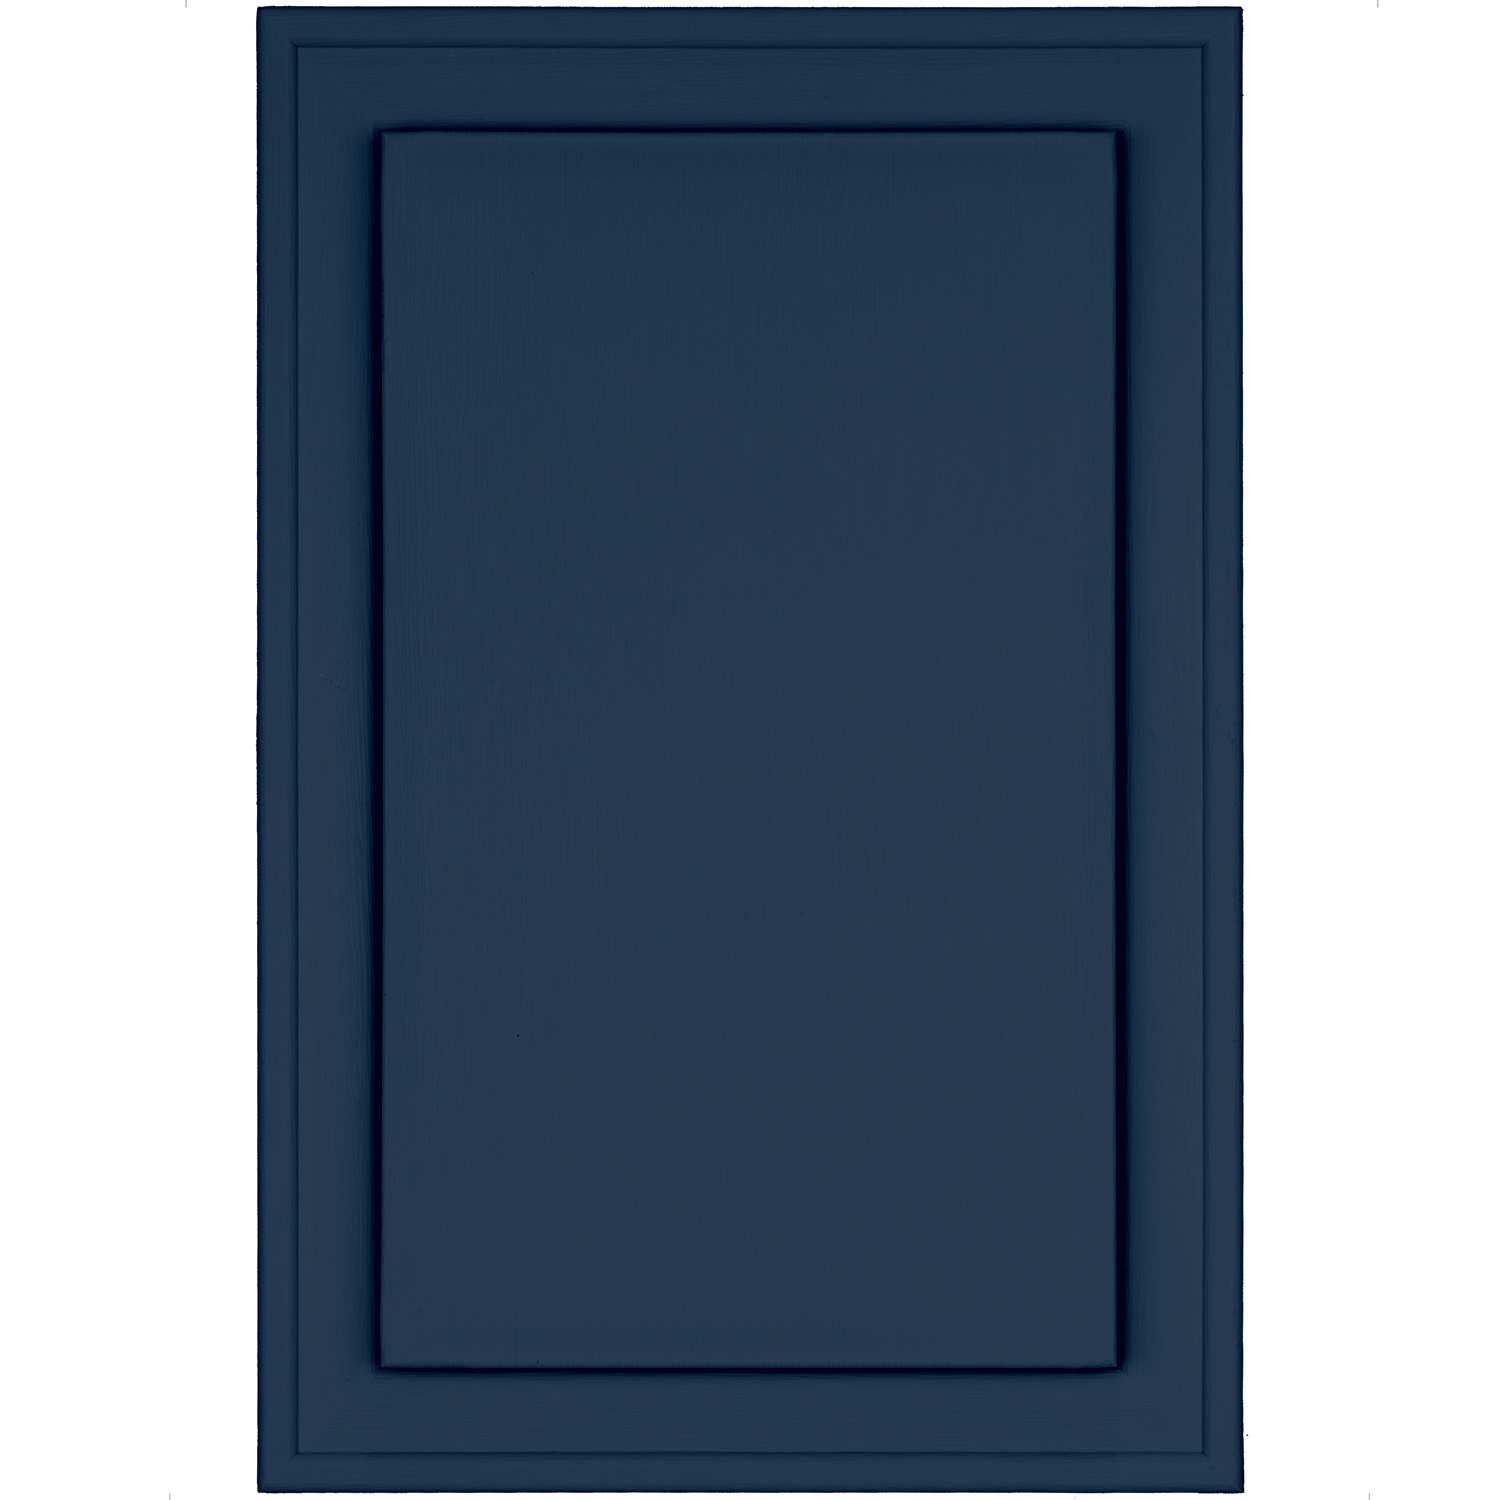 Standard Jumbo - 423 Midnight Blue - Carton of 10